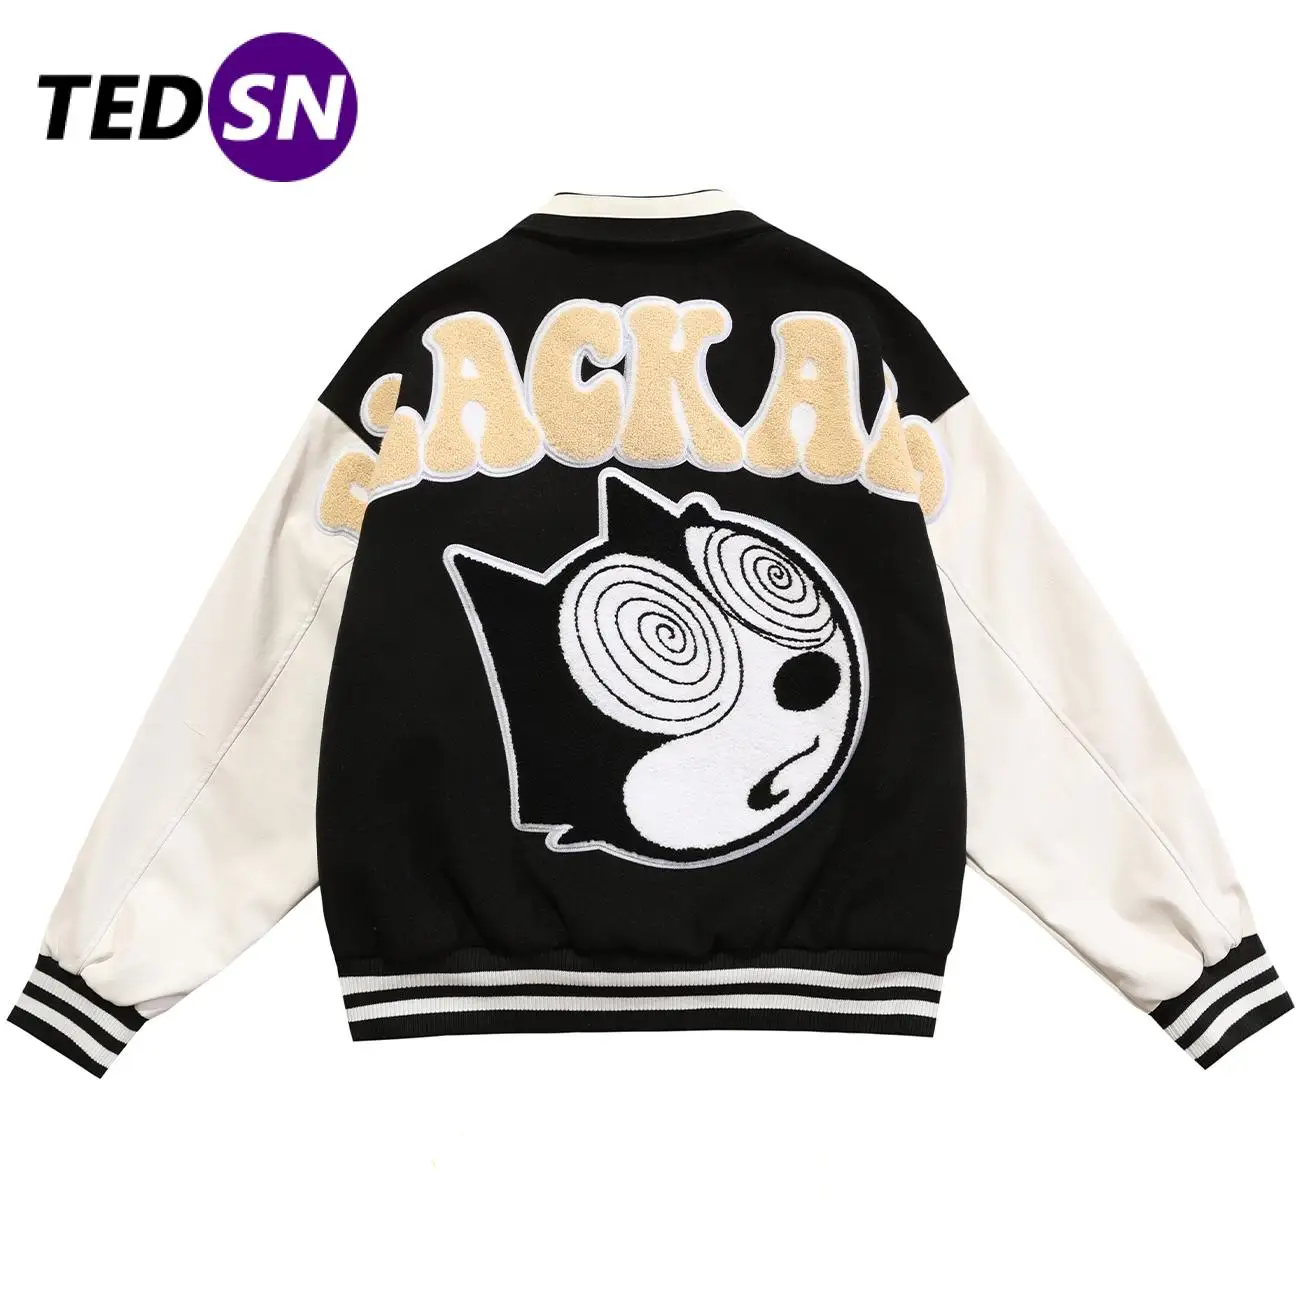 Зимняя бейсбольная куртка TEDSN 2021, Мужская модная куртка, женская черная уличная одежда, Студенческая парная Осенняя повседневная одежда ове...